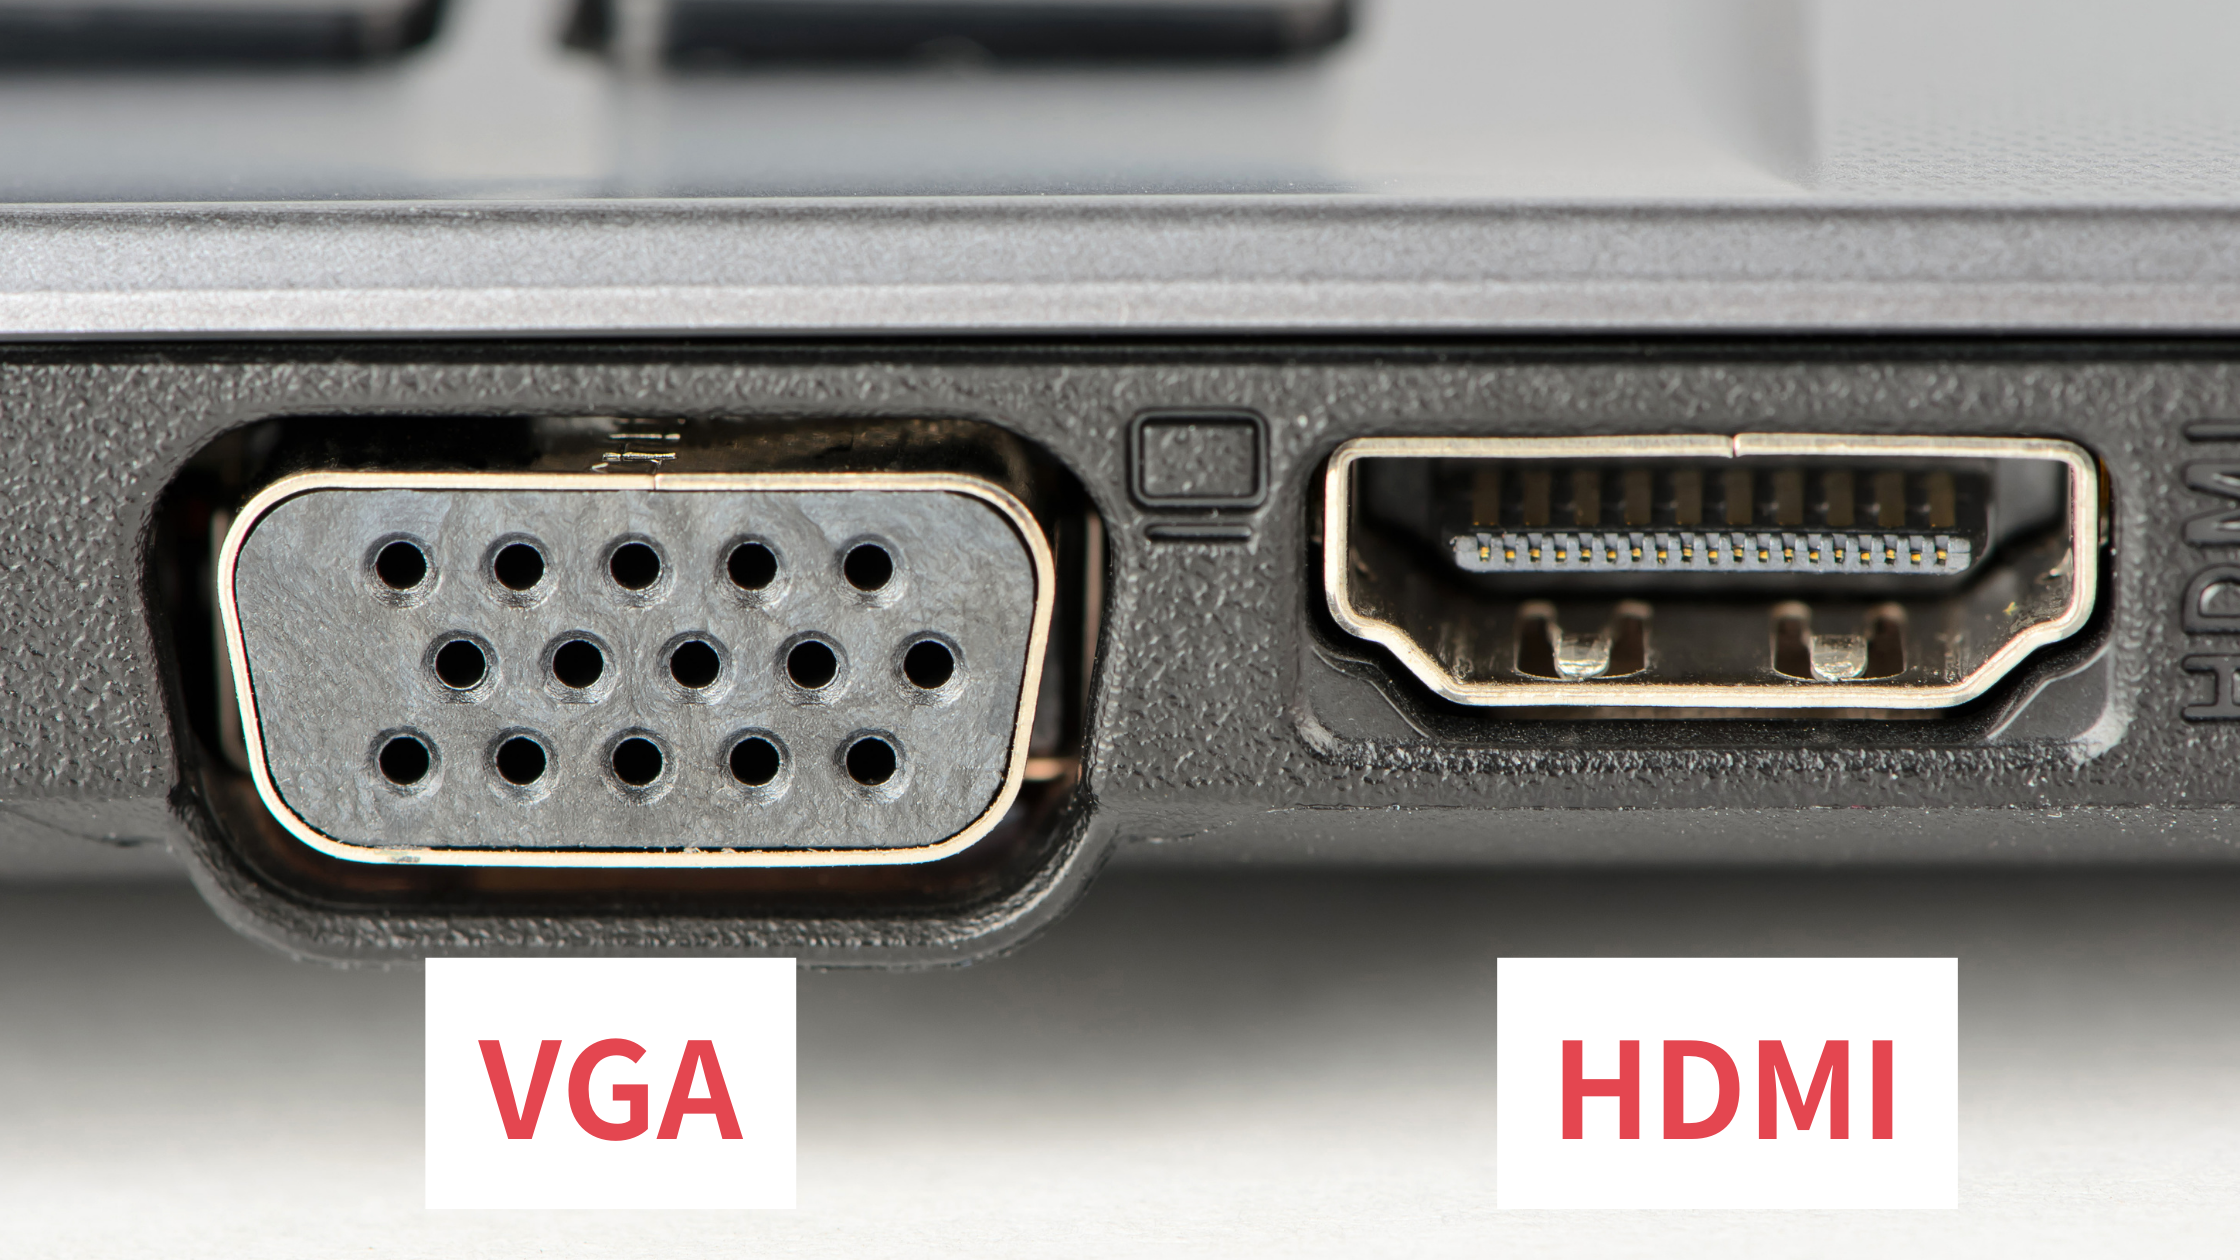 VGAとHDMIに見分け方